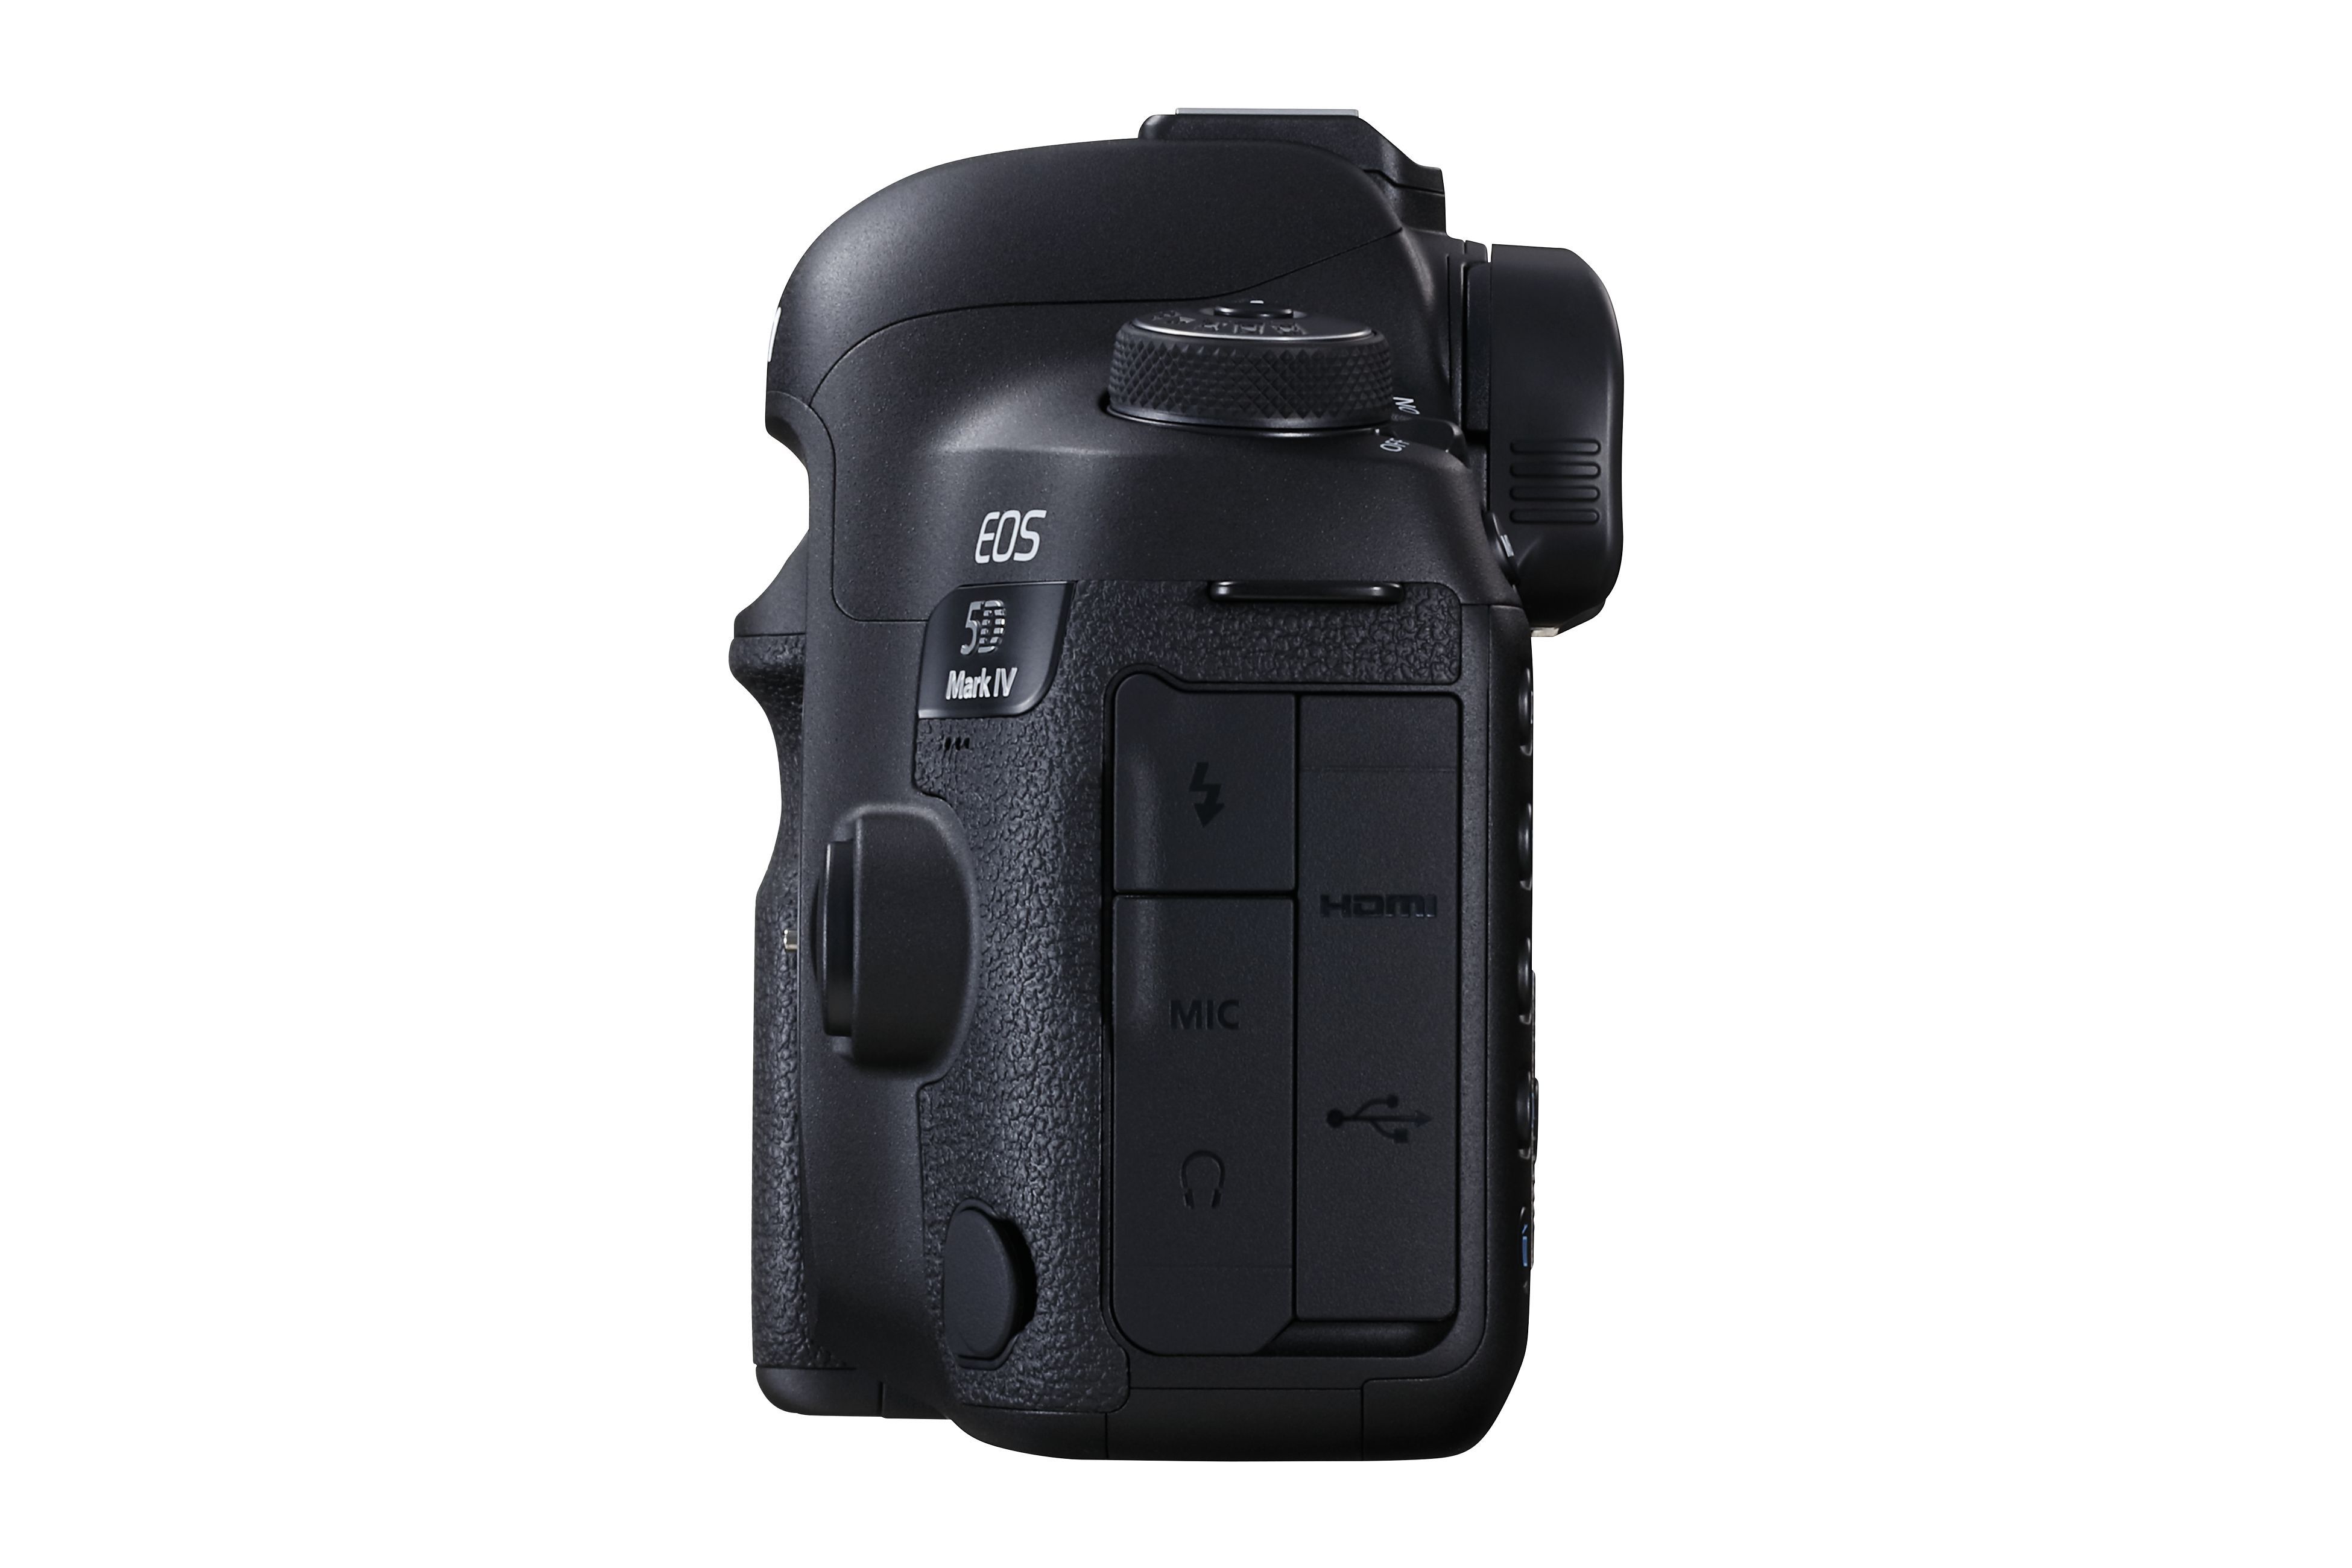 Canon EOS 5D Mark IV + 50mm f/1,4 USM 